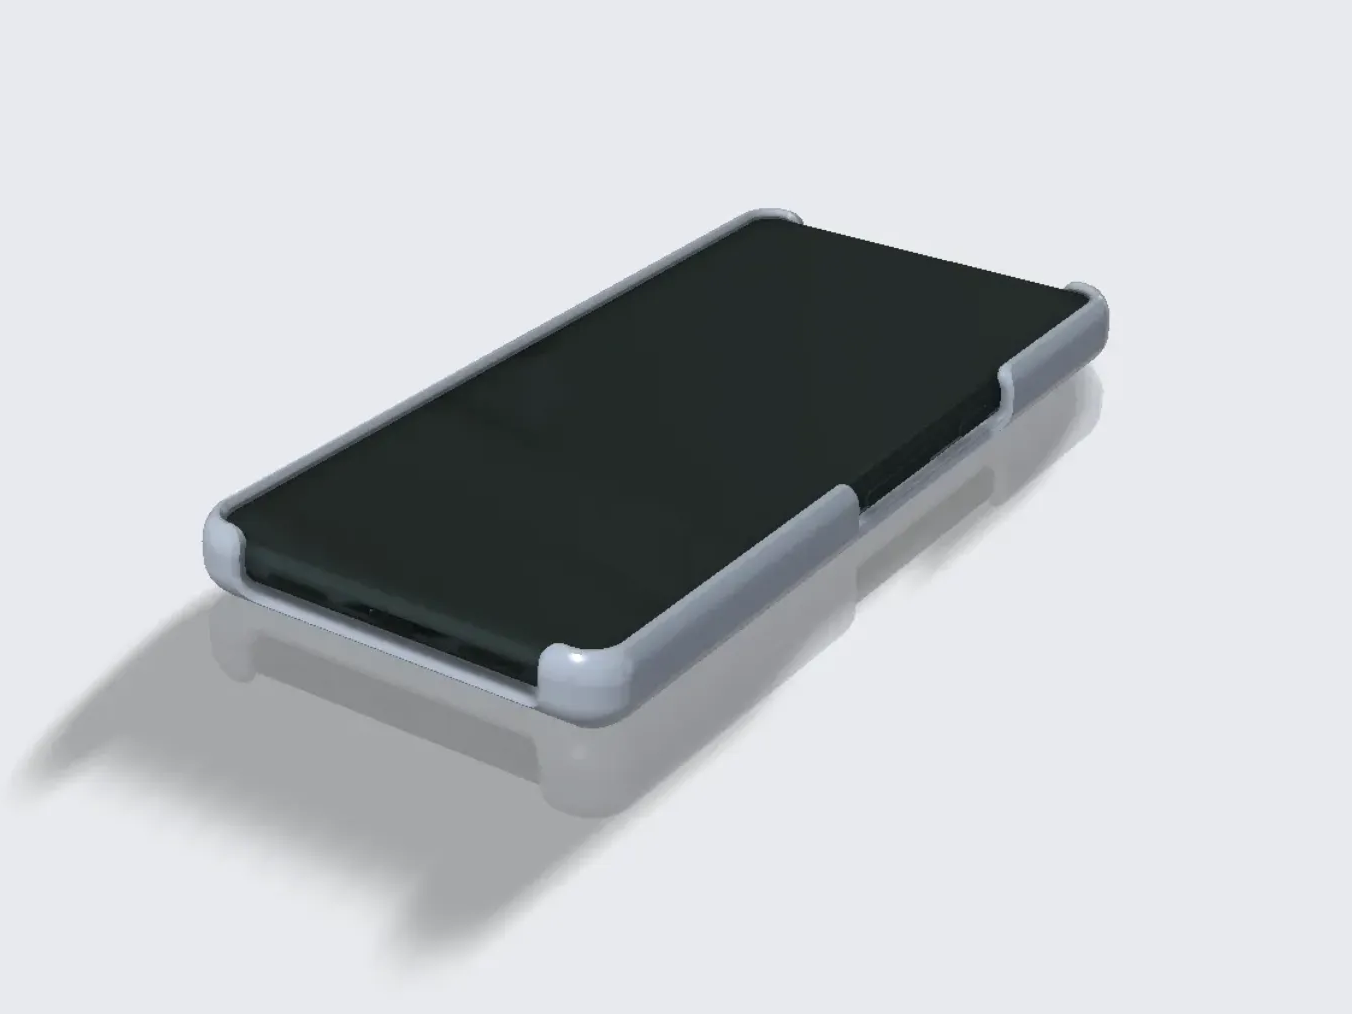 Google Pixel 7a Case Cover, 3D models download